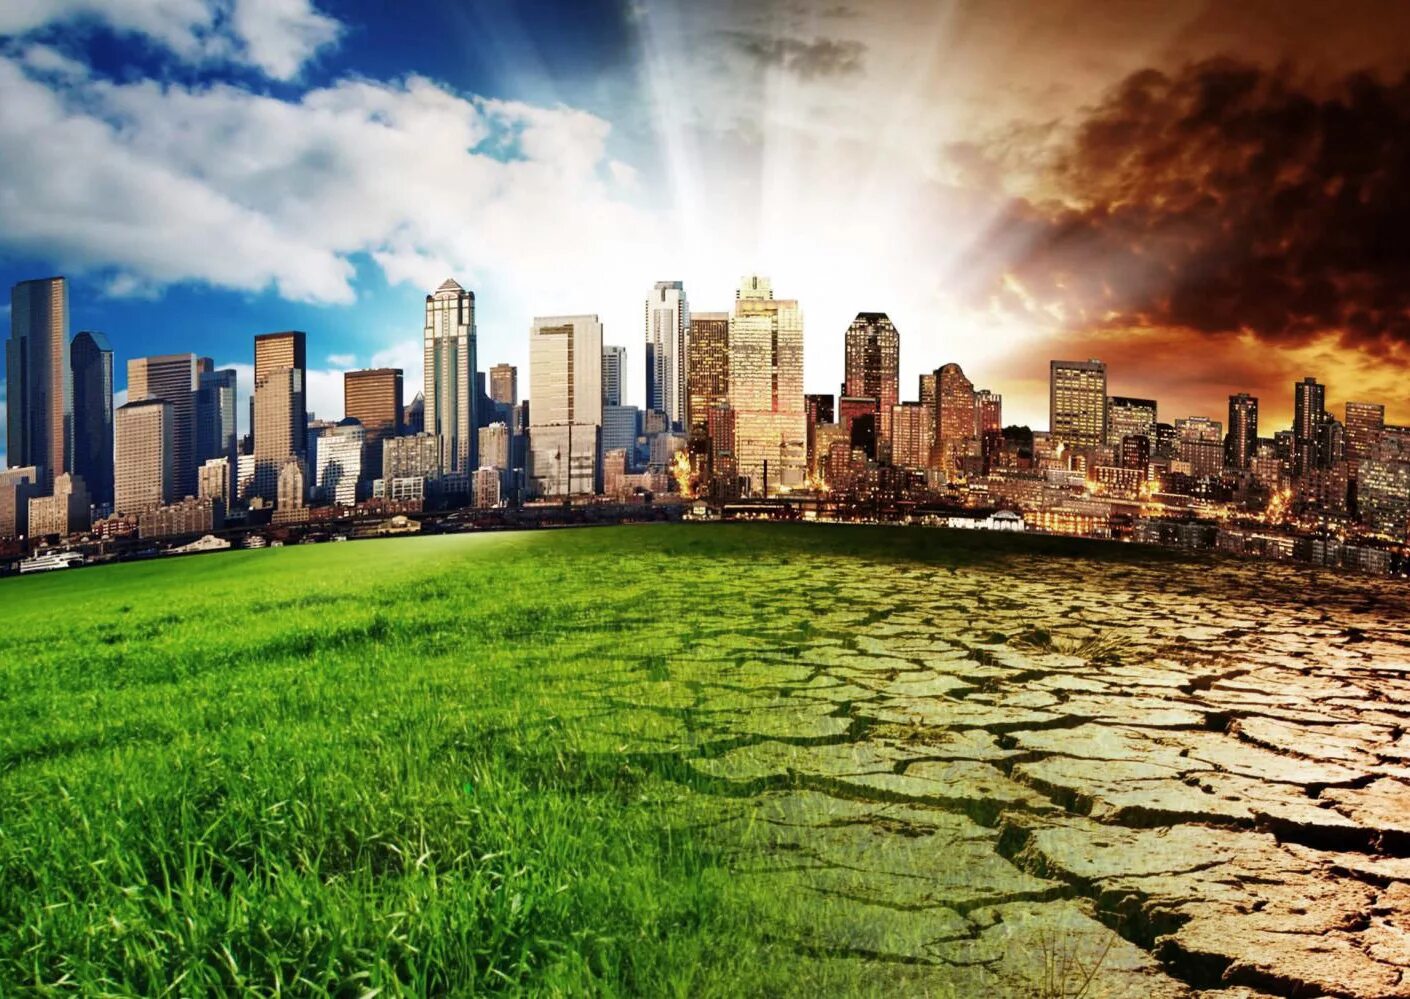 Изменение климата и последствия экологических проблем. Экологические проблемы. Разрушение природы. Природа в городе. Загрязнение окружающей среды.